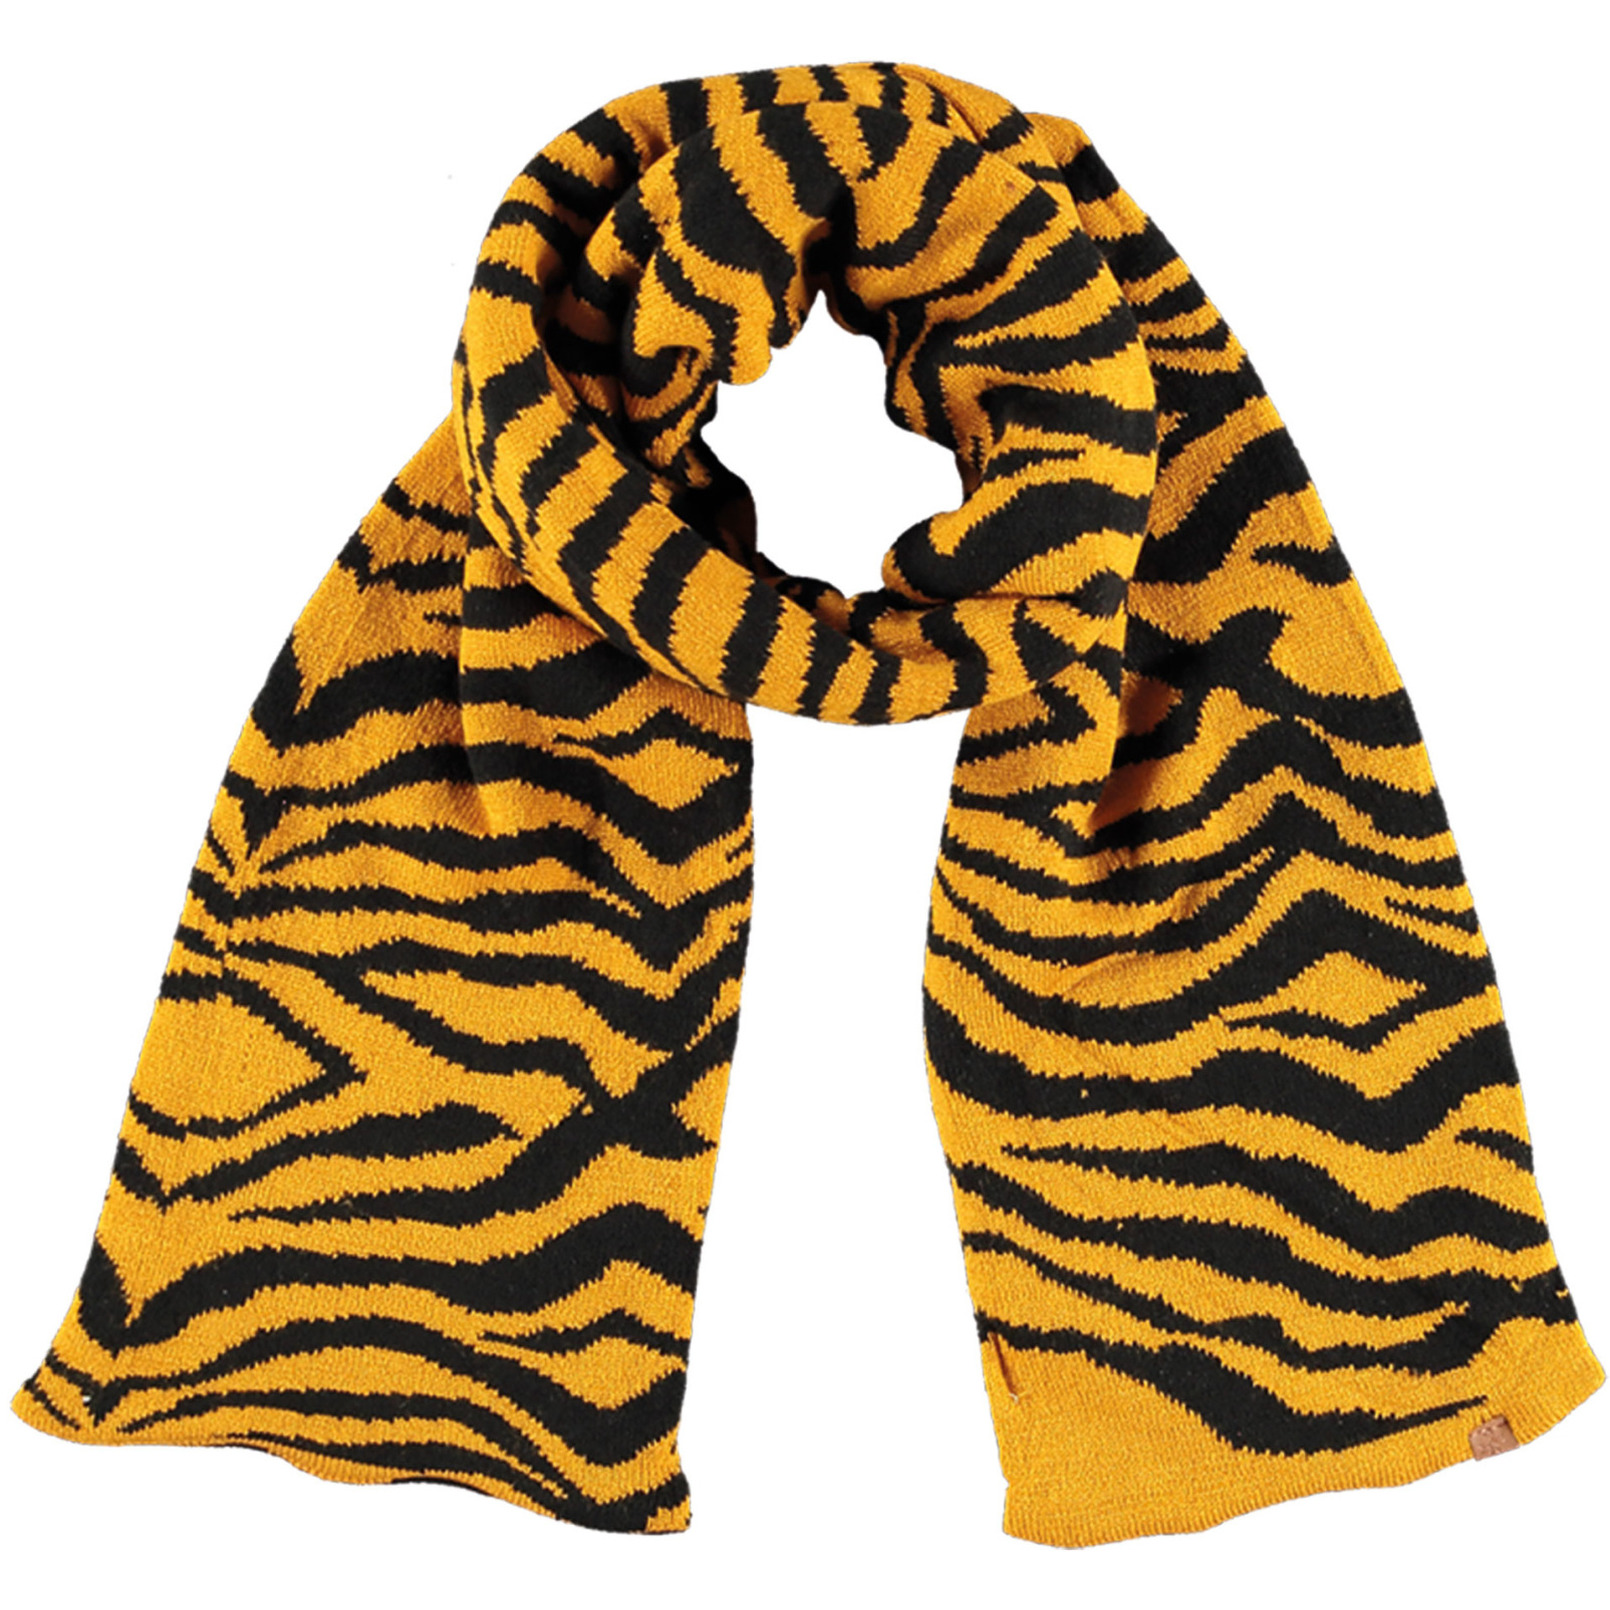 Tijger/zebra sjaal/shawl okergeel/zwart gestreept voor meisjes